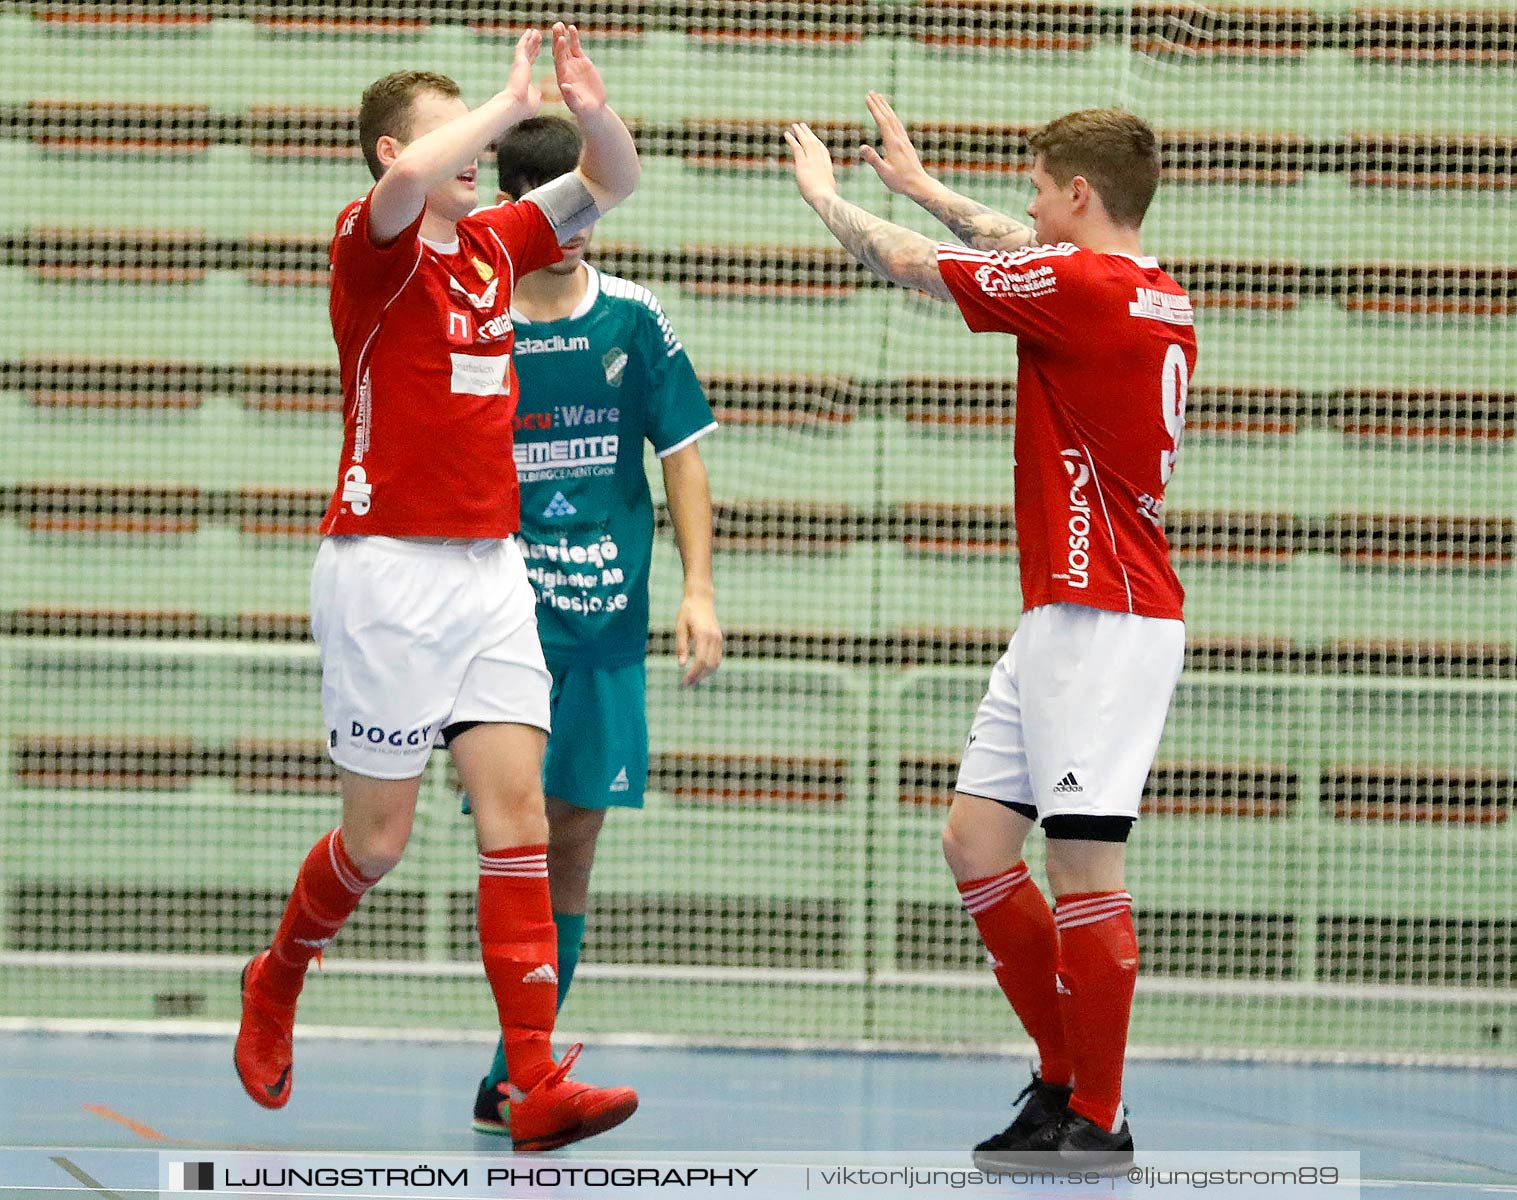 Skövde Futsalcup 2019 Herrar Vårgårda IK-Våmbs IF,herr,Arena Skövde,Skövde,Sverige,Futsal,,2019,227305